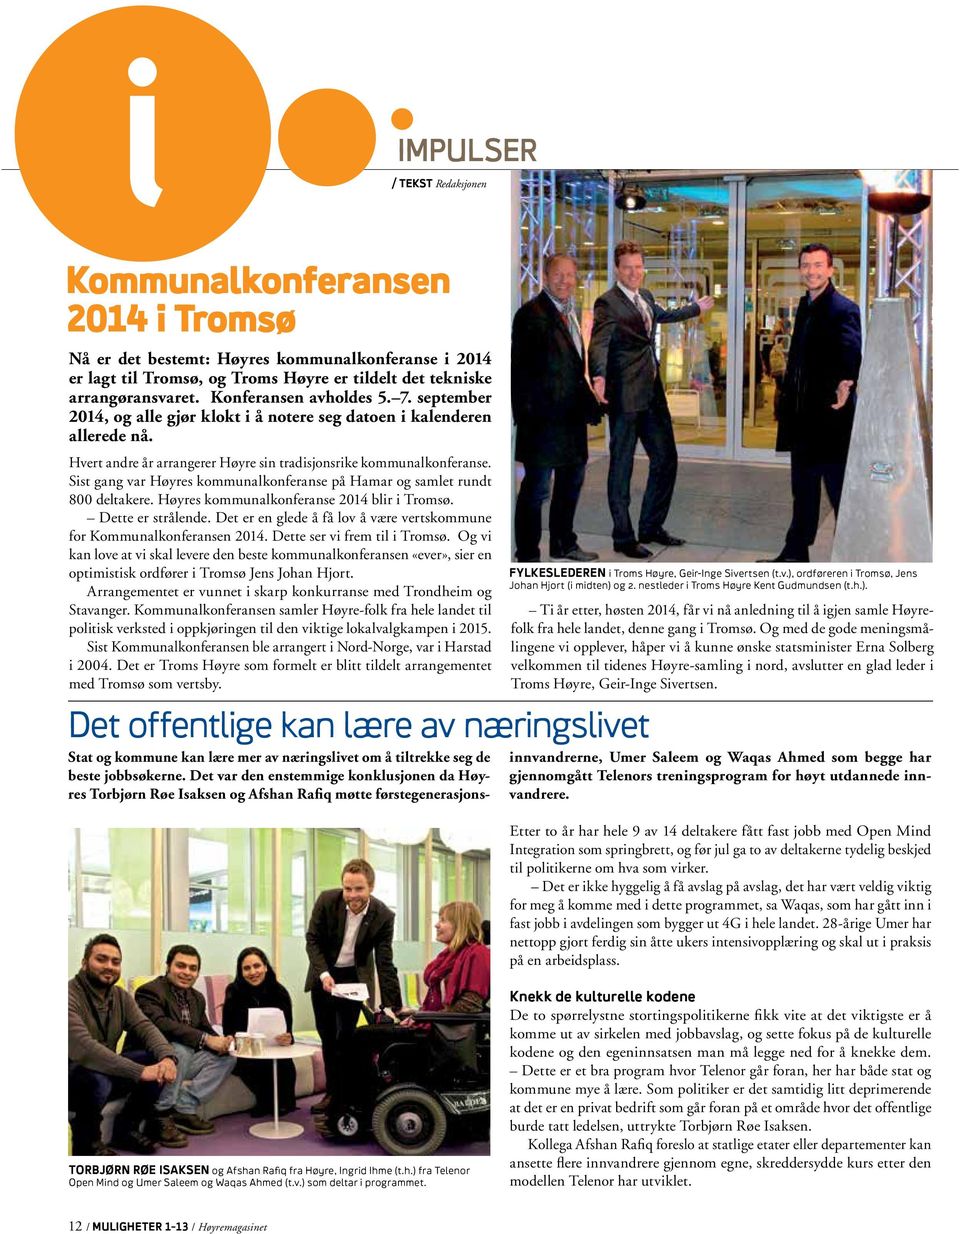 Sist gang var Høyres kommunalkonferanse på Hamar og samlet rundt 800 deltakere. Høyres kommunalkonferanse 2014 blir i Tromsø. Dette er strålende.